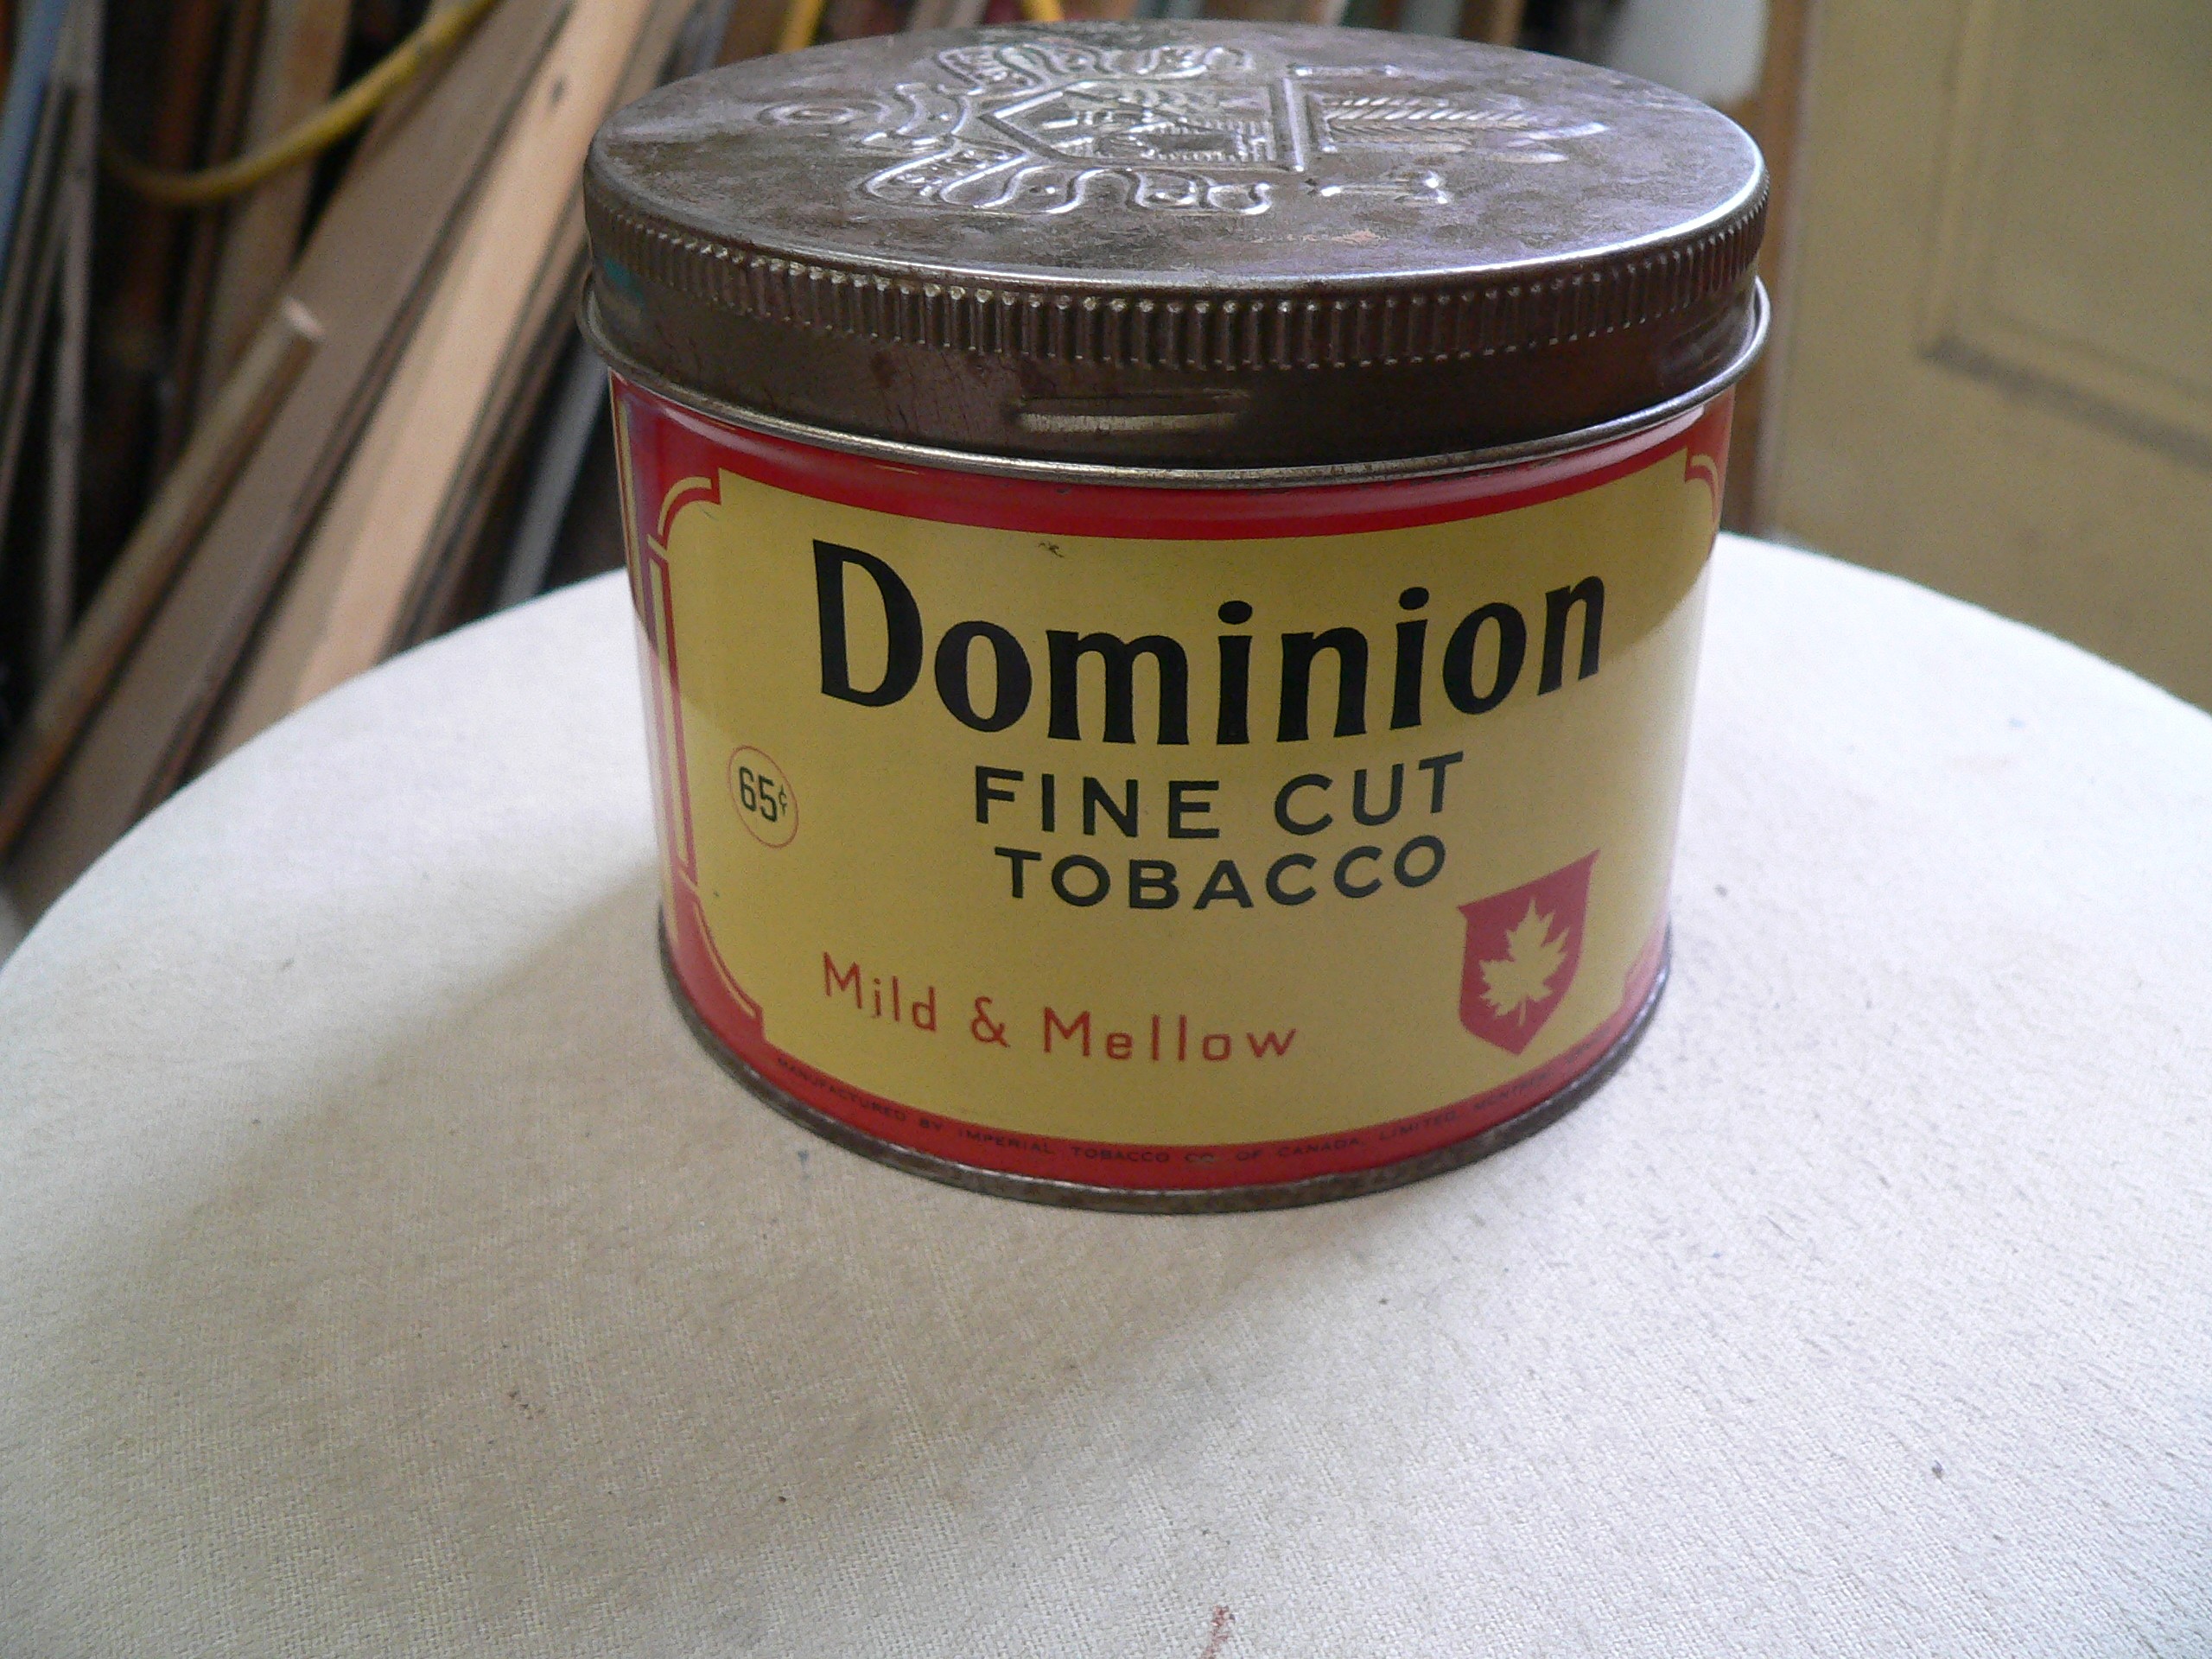 Canne dominion fine cut # 7071.14